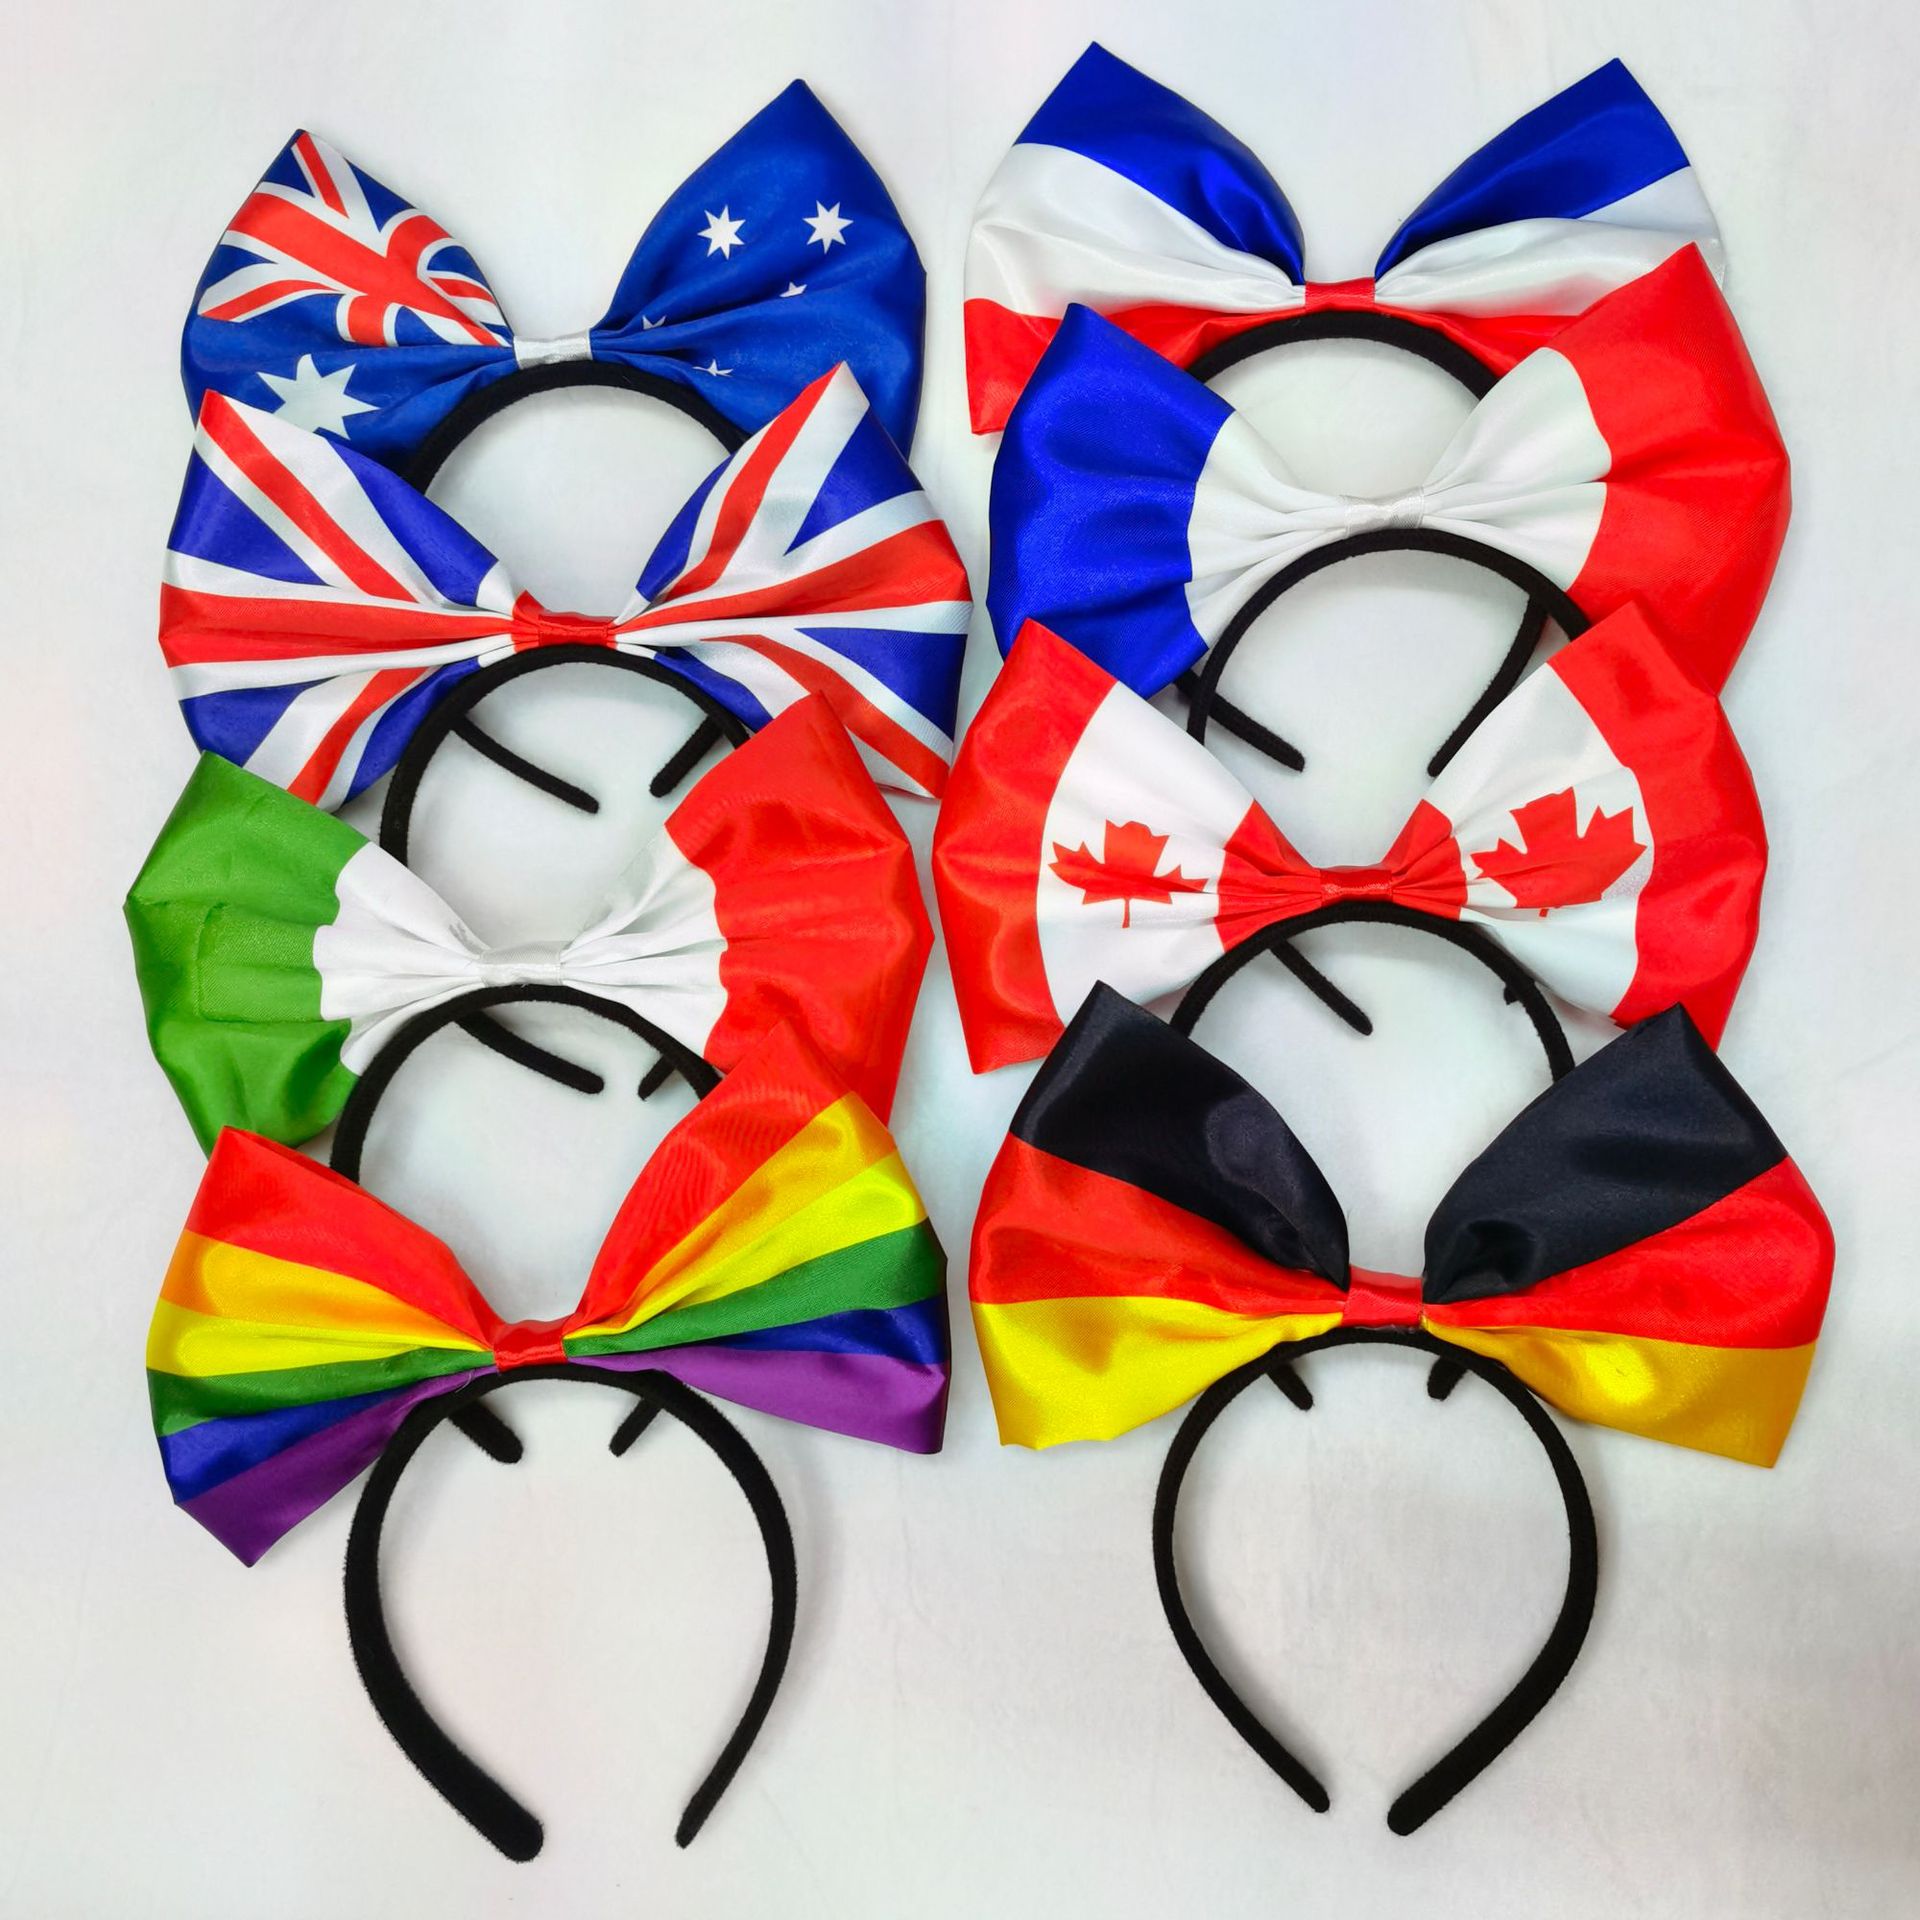 国旗图案蝴蝶结头箍荷兰澳大利亚新西兰瑞典美国英国加拿大意大利